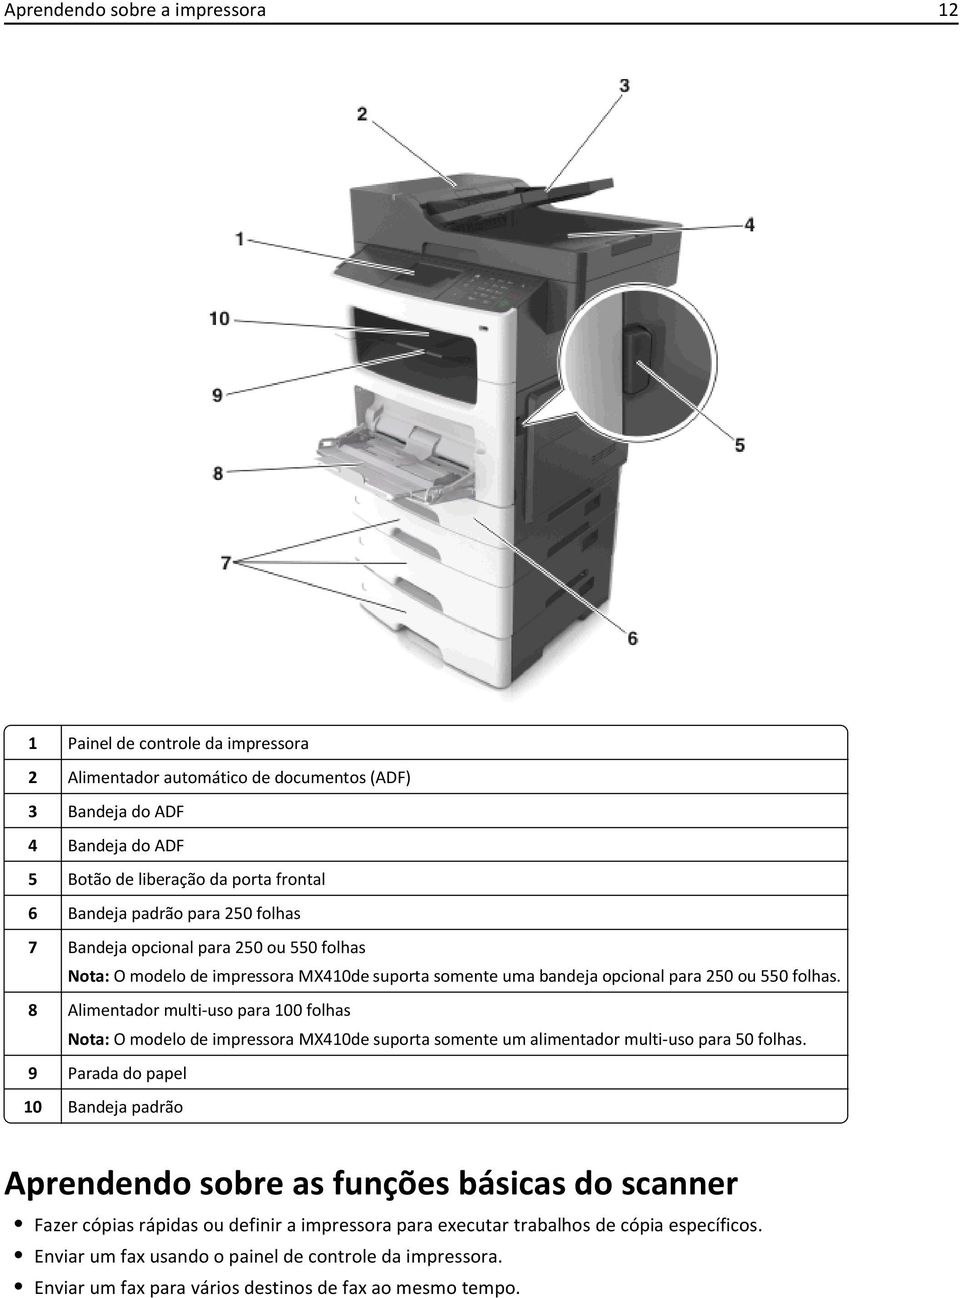 8 Alimentador multi-uso para 100 folhas Nota: O modelo de impressora MX410de suporta somente um alimentador multi-uso para 50 folhas.